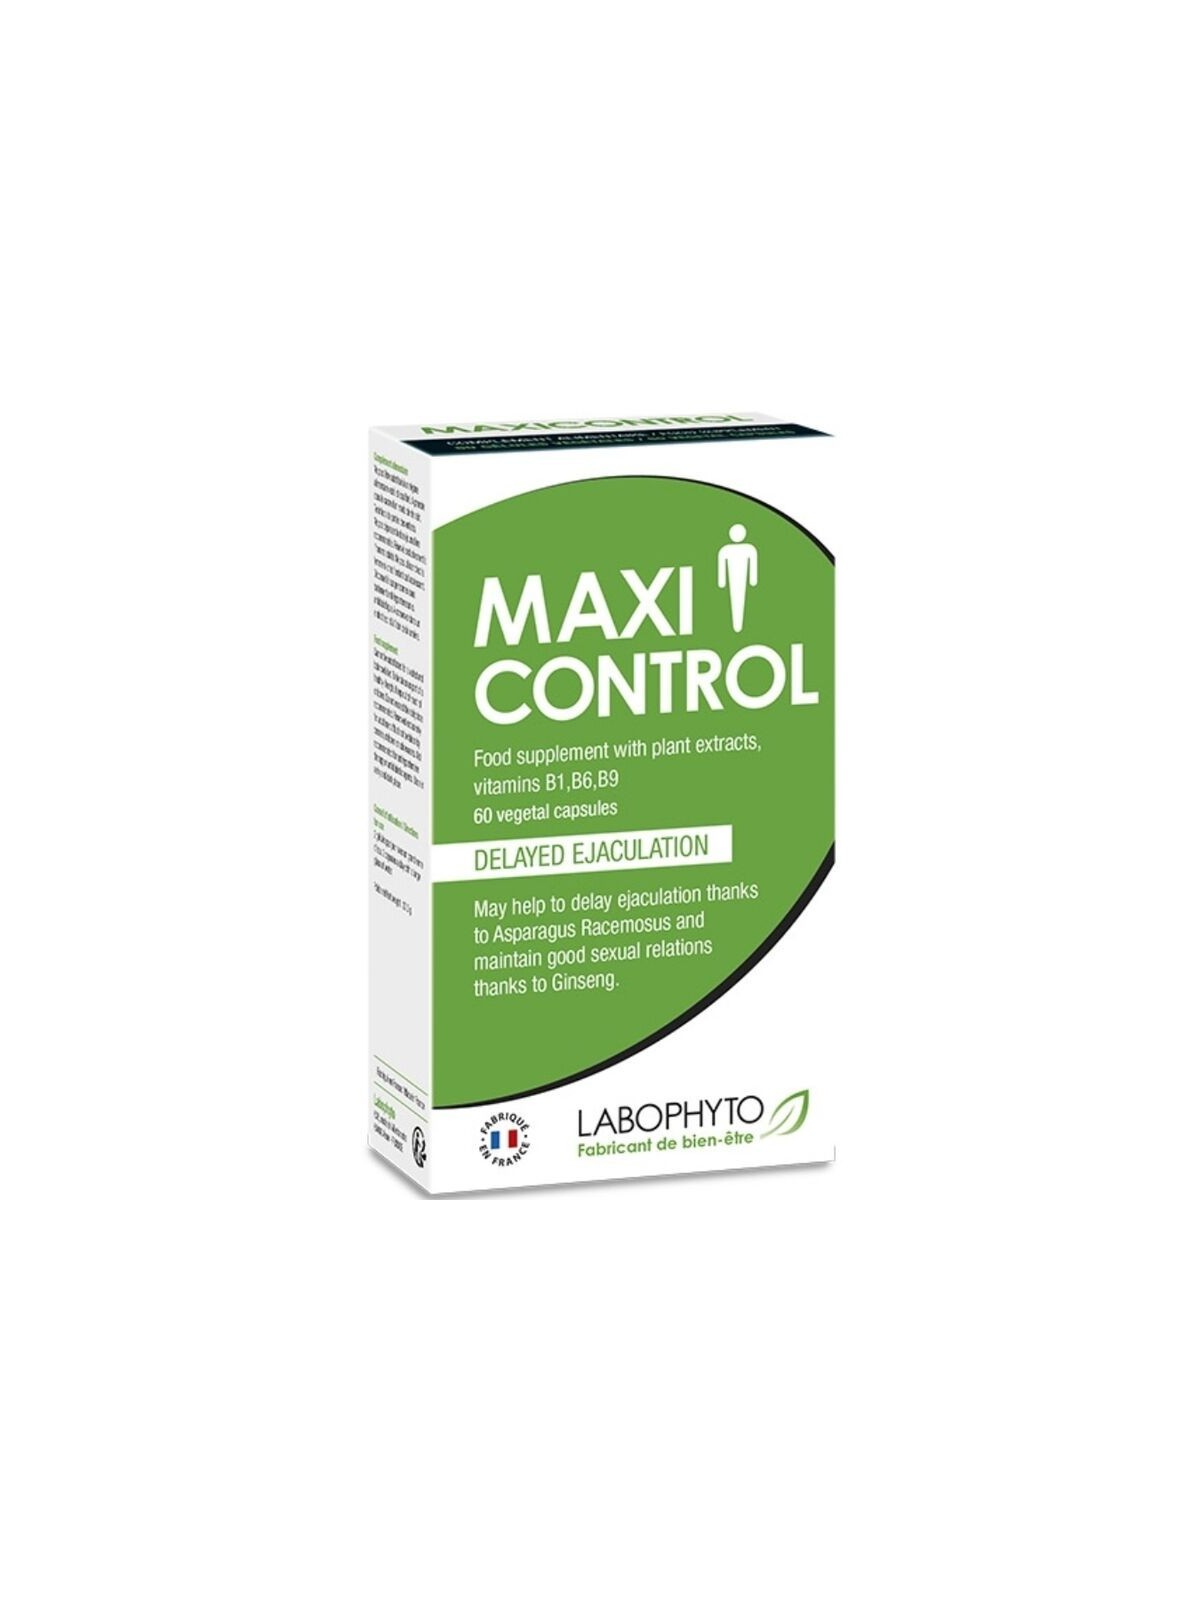 Maxi Control Retardante Eyaculación 60 Cap - Comprar Retardante Labophyto - Retardantes (1)